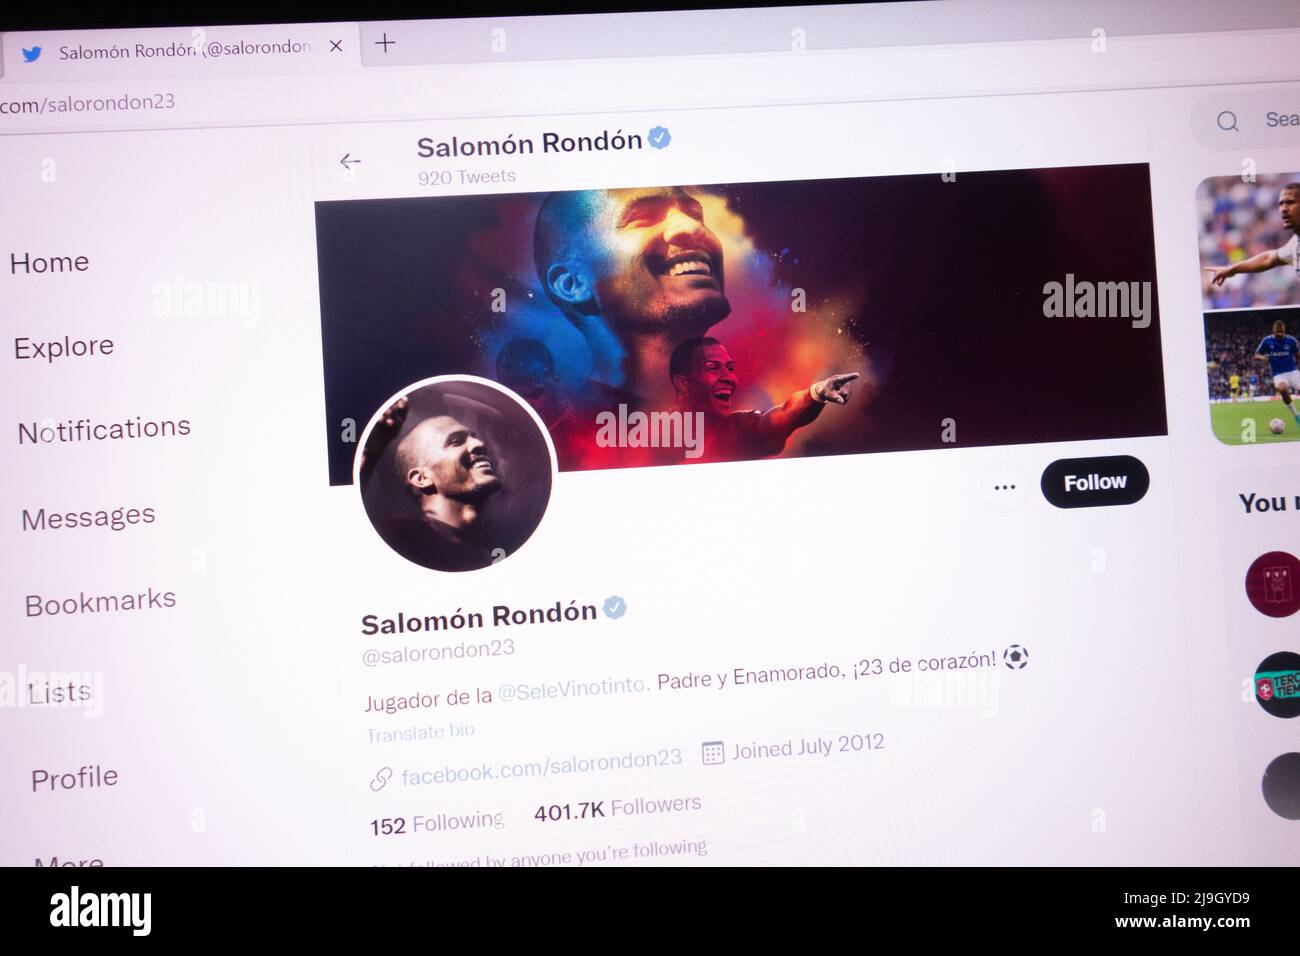 KONSKIE, POLEN - 21. Mai 2022: Der offizielle Twitter-Account von Salomon Rondon wird auf dem Laptop-Bildschirm angezeigt Stockfoto